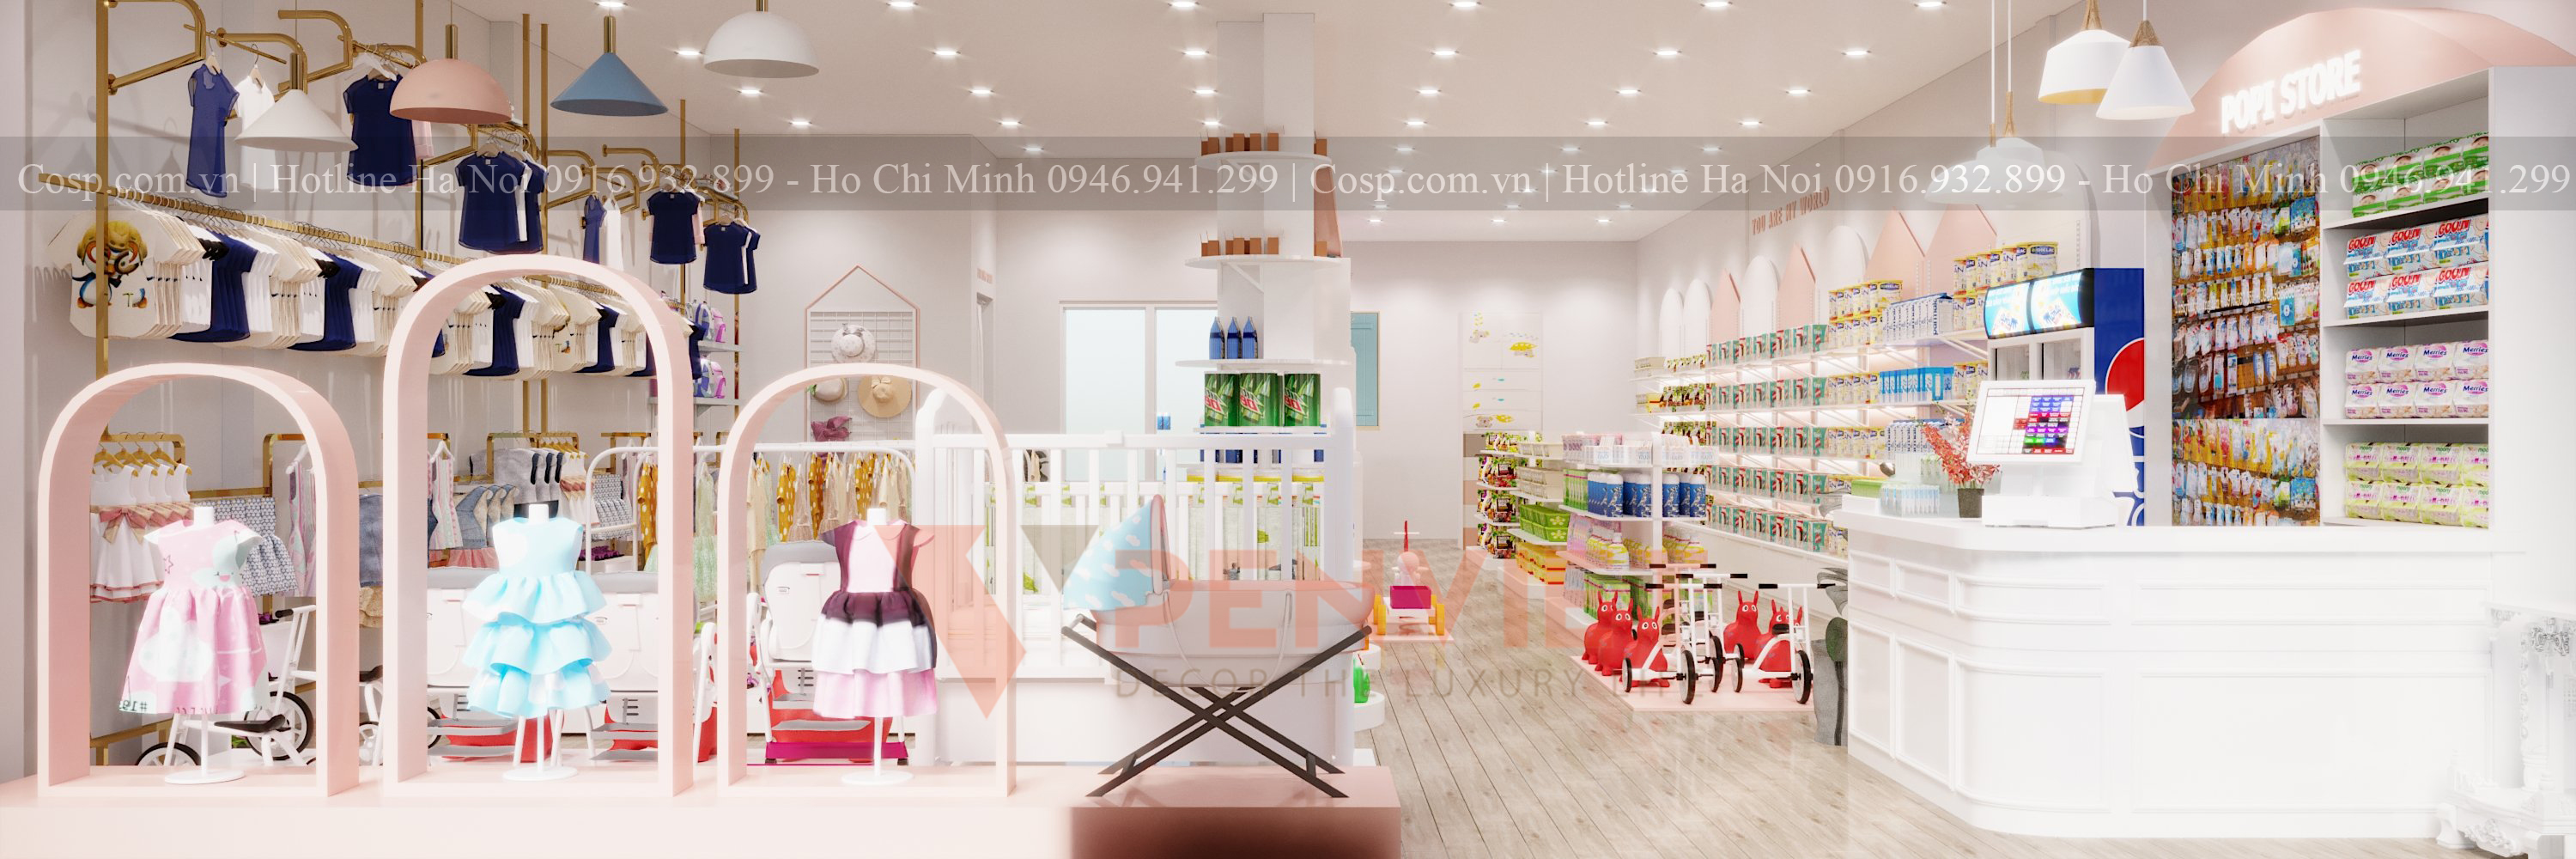 Thiết kế cửa hàng mẹ và bé POPI Store